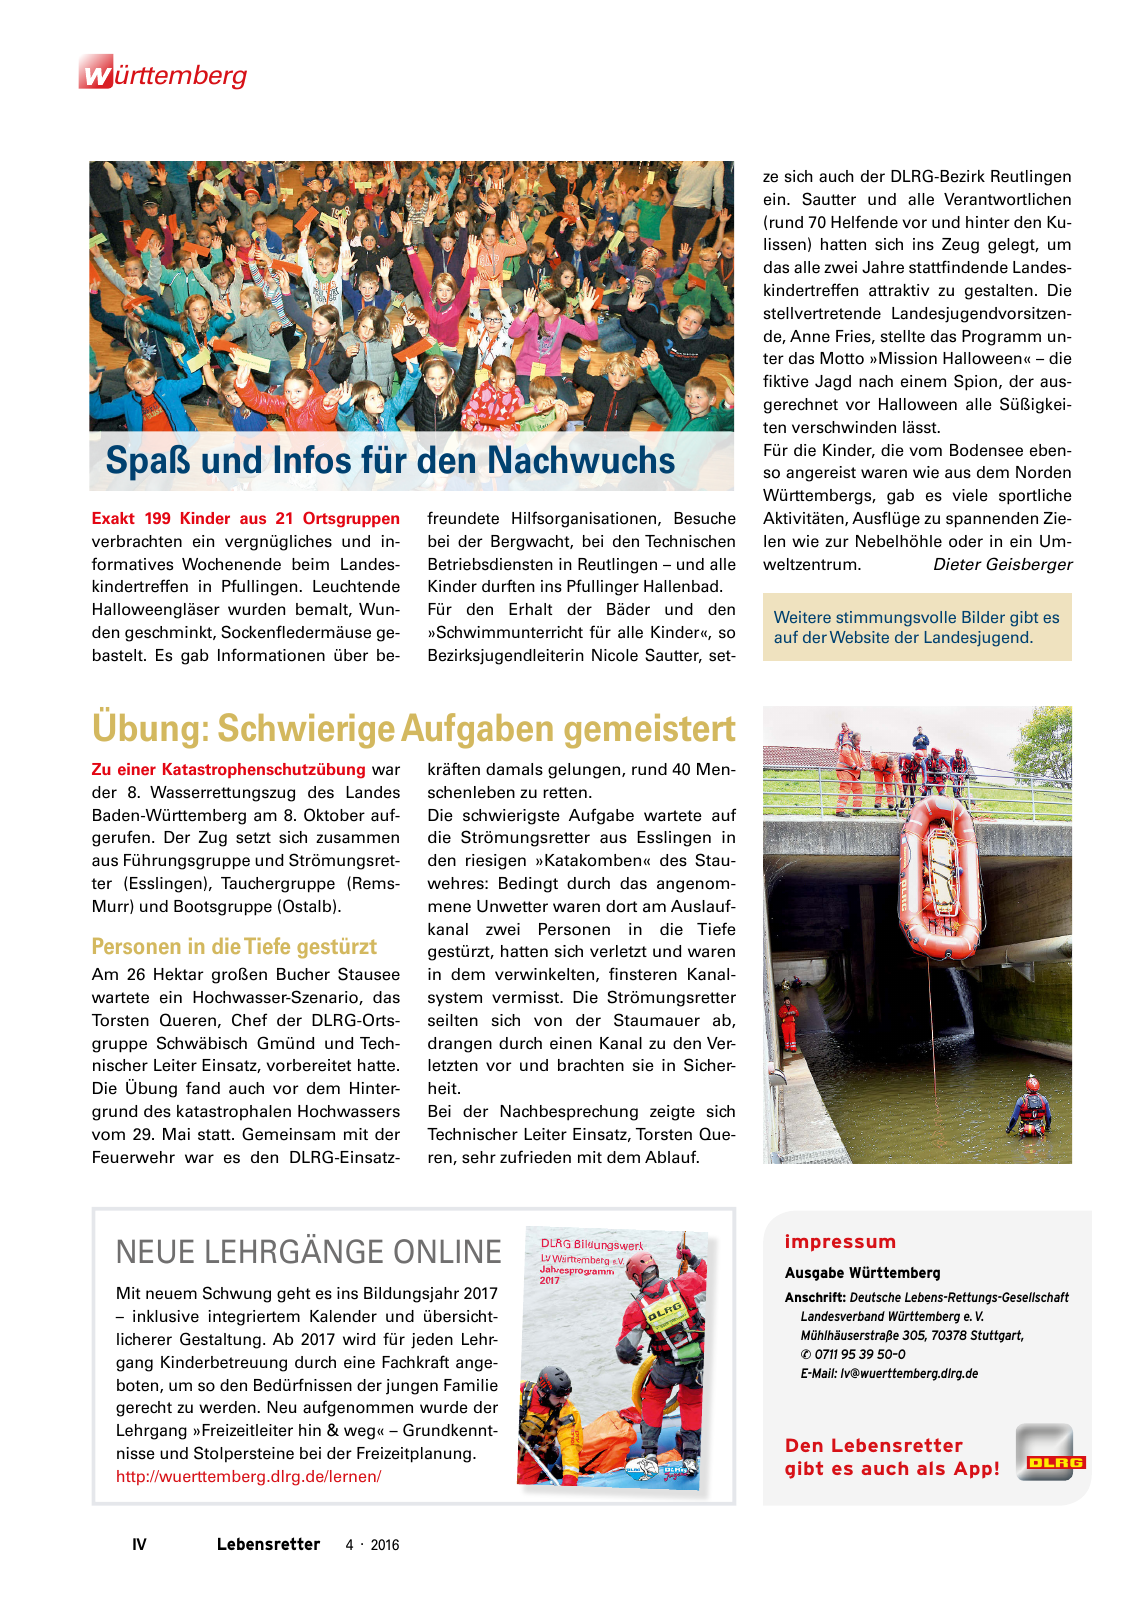 Vorschau Lebensretter 4/2016 - Regionalausgabe Württemberg Seite 6